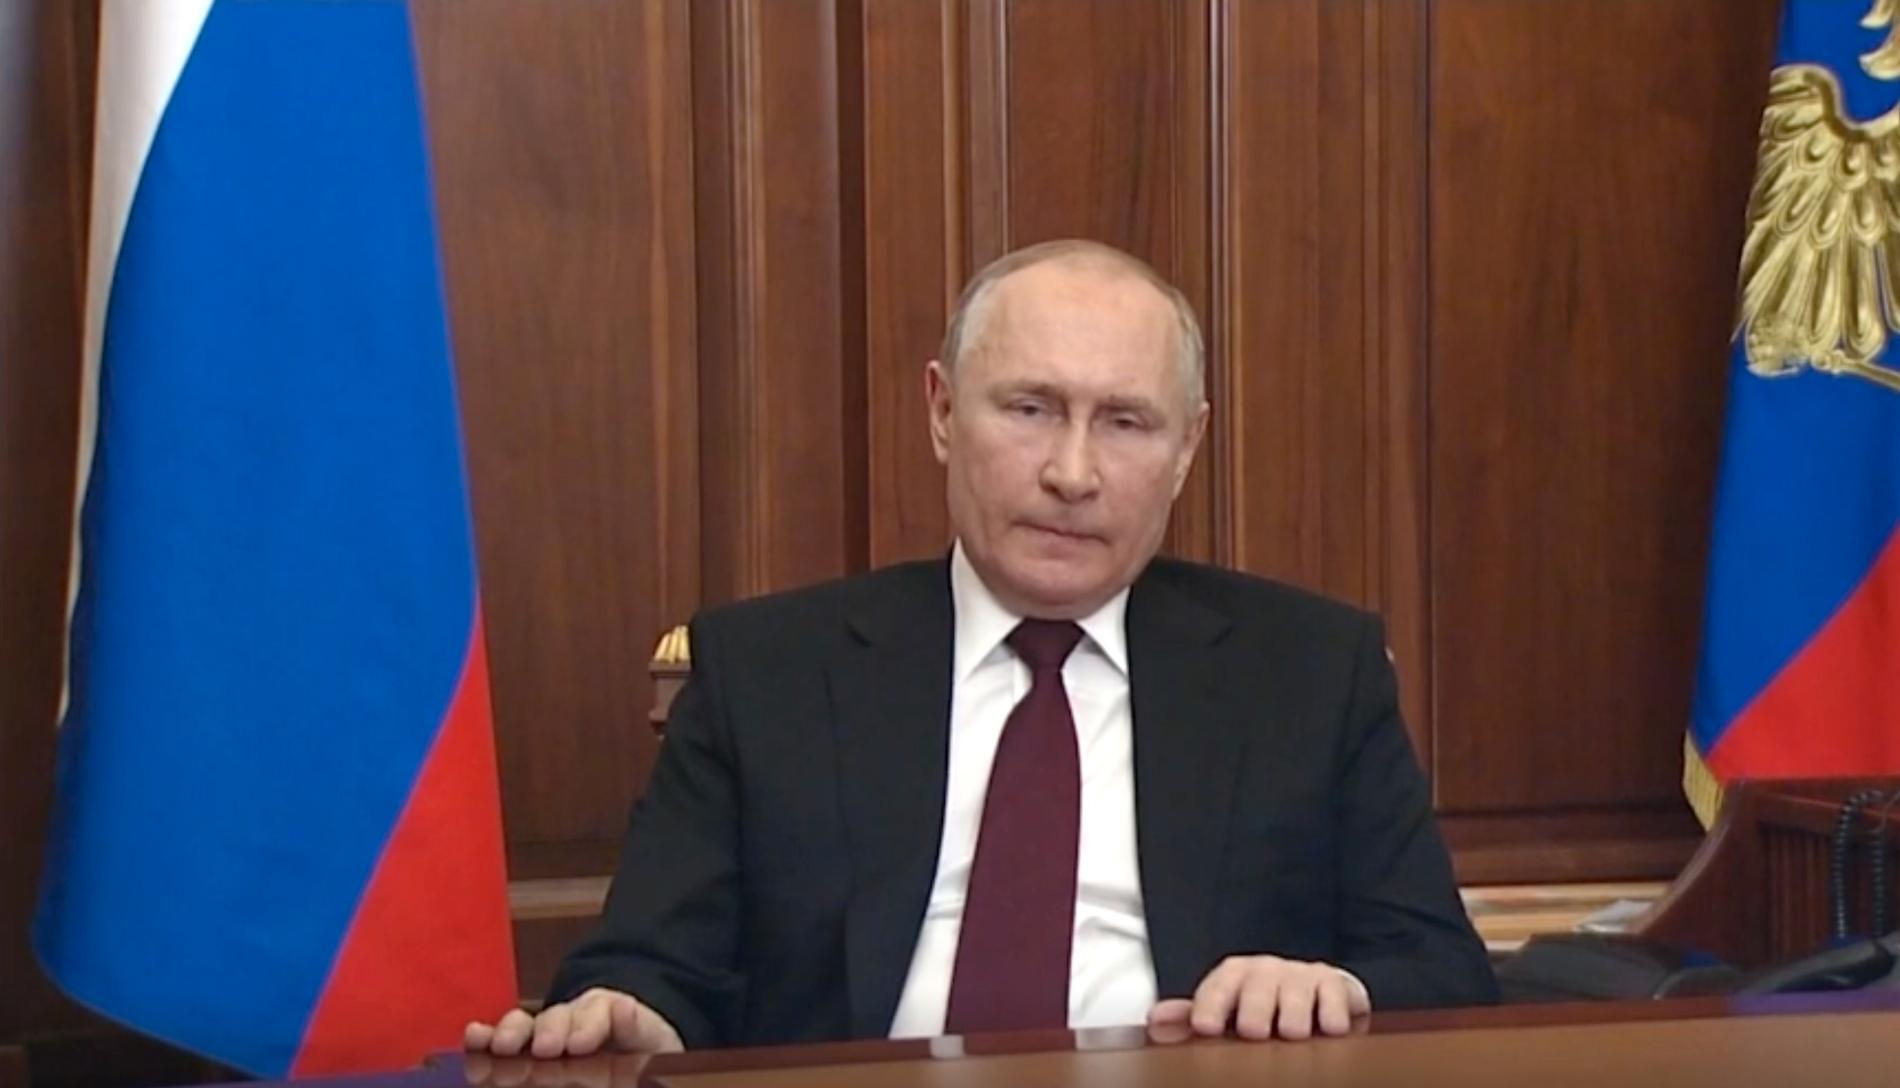 Talet som publicerades i måndags, där Putin erkänner Donetsk och Luhansk i Ukraina.